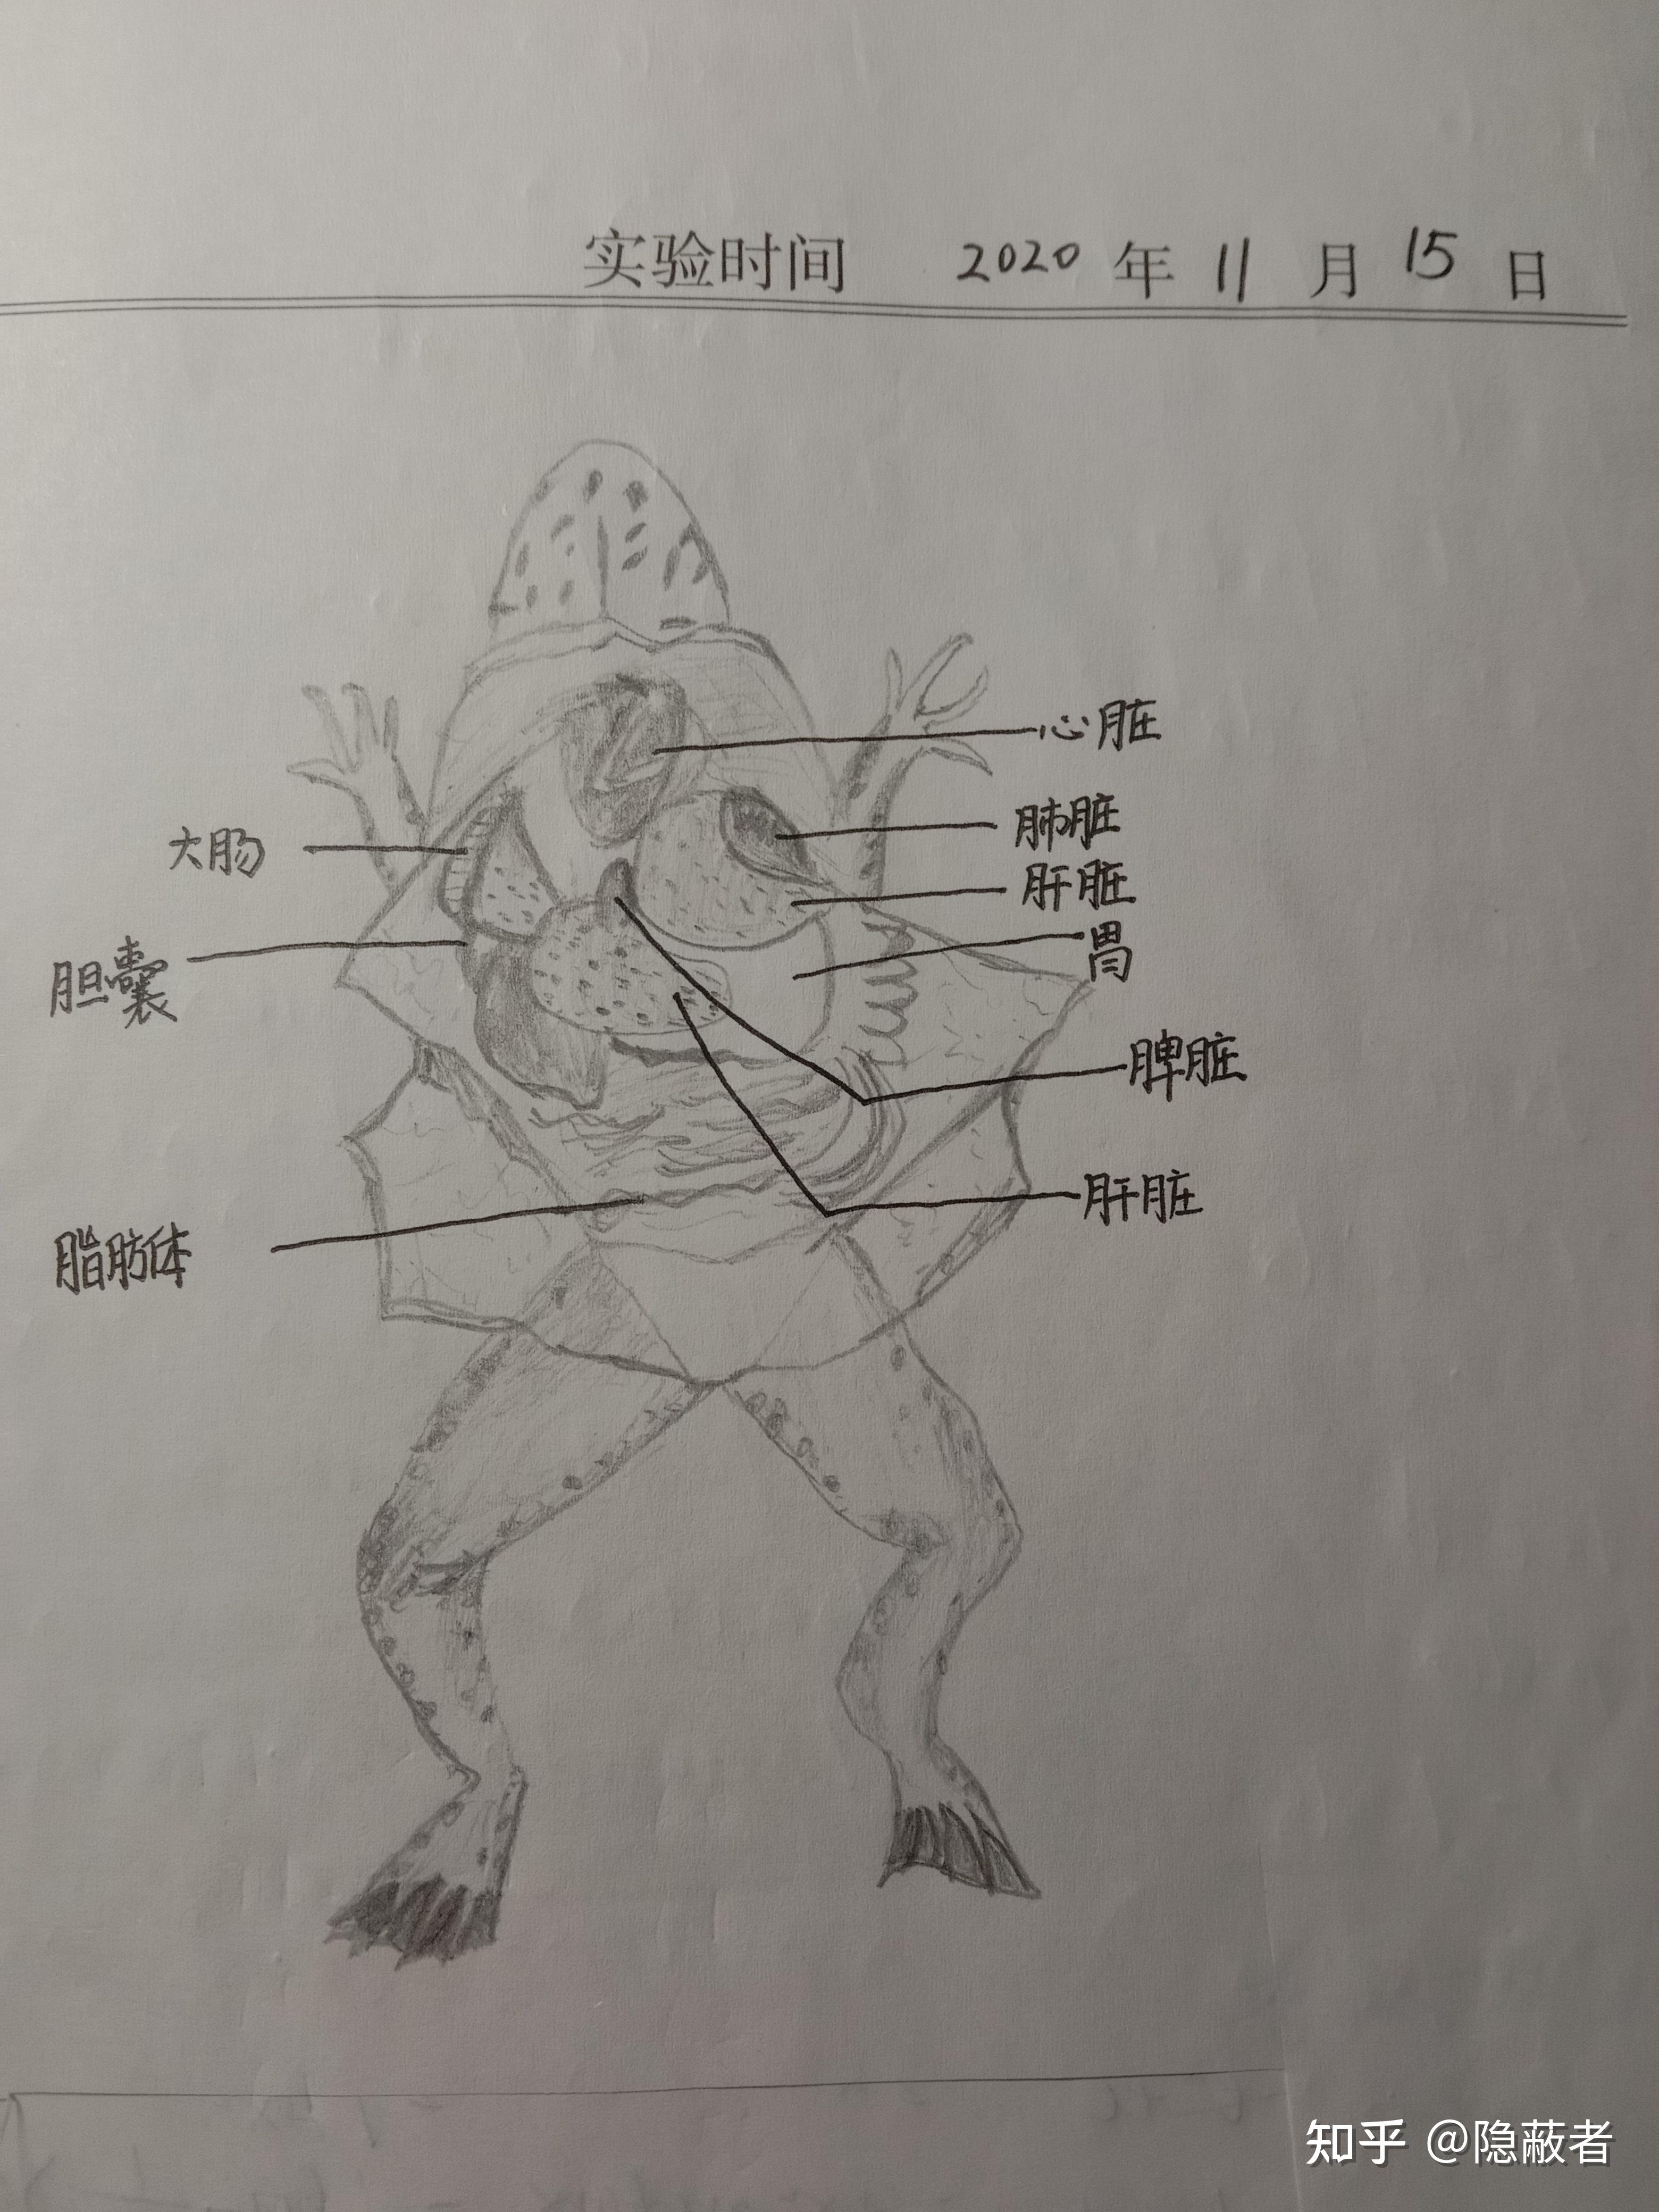 雄性牛蛙解剖图图片